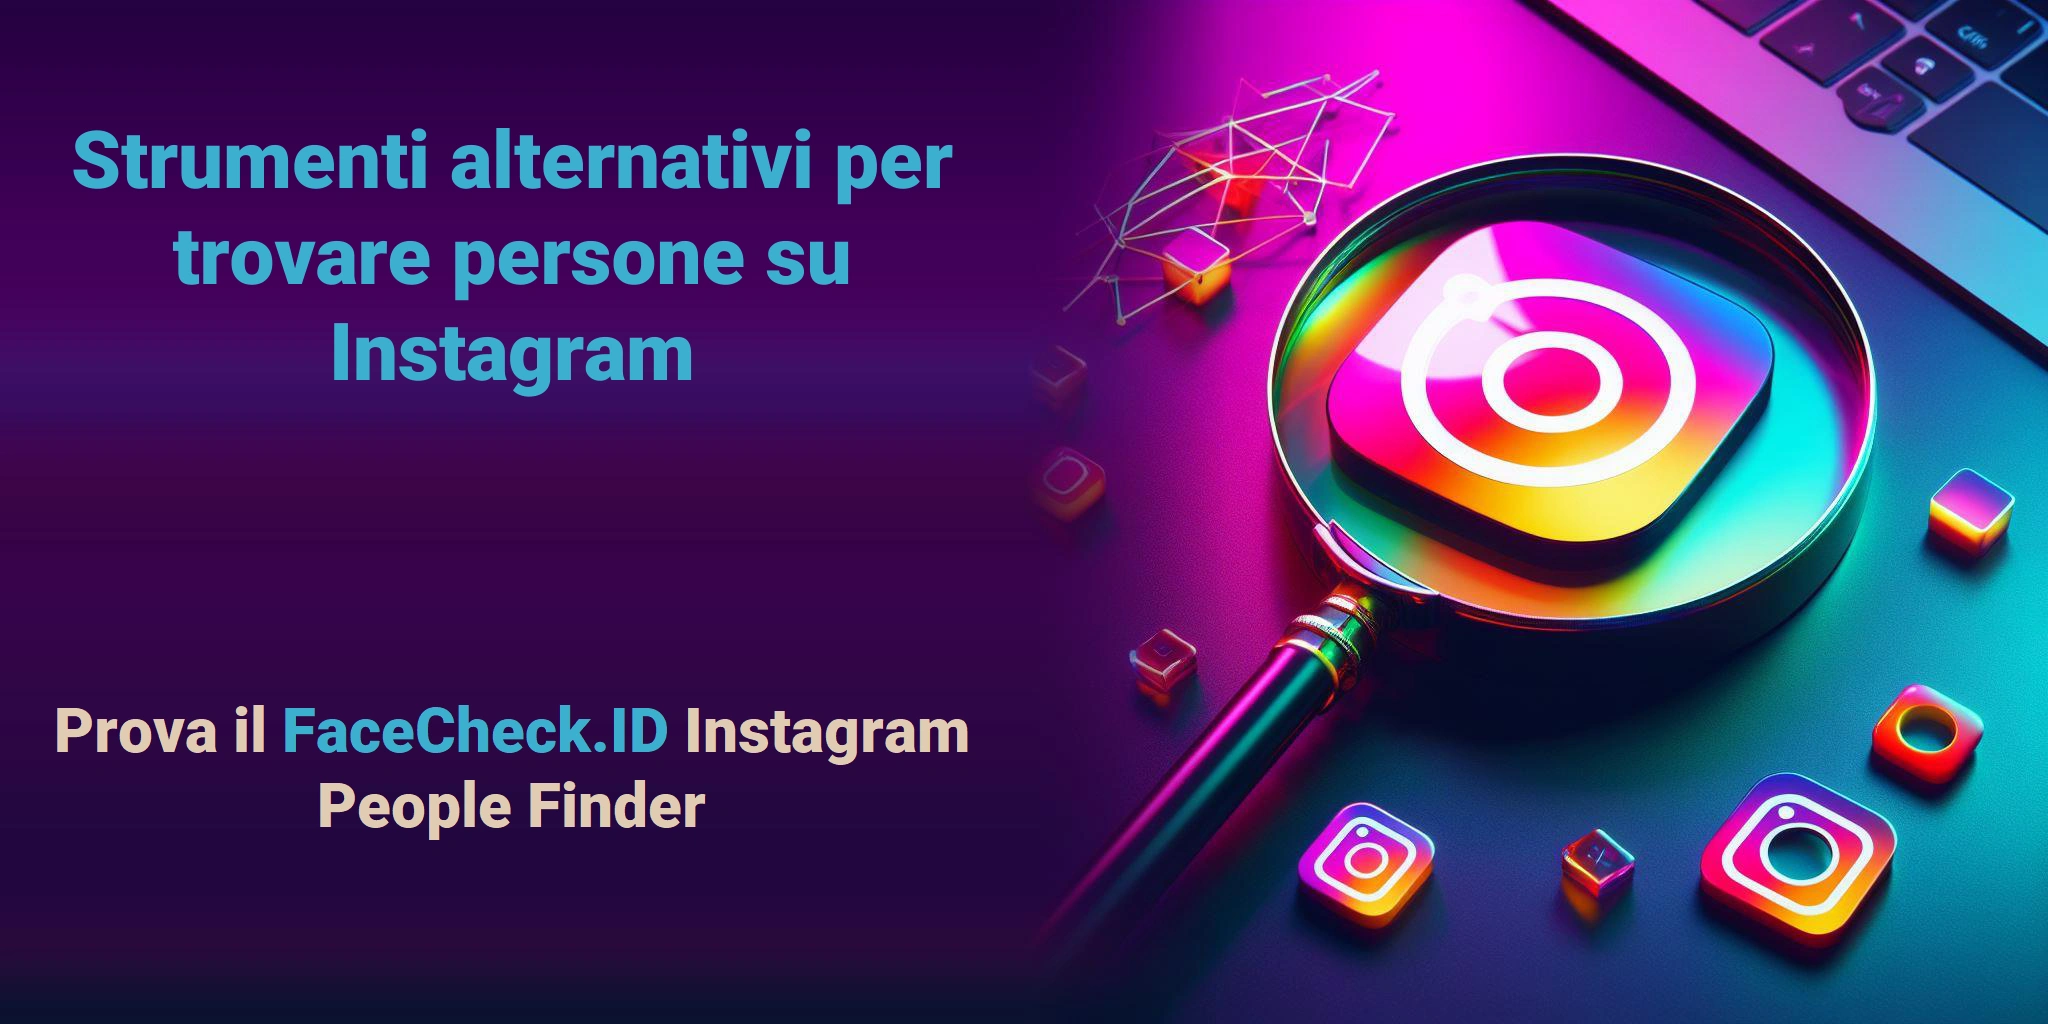 Strumenti alternativi per trovare persone su Instagram Prova il FaceCheck.ID Instagram People Finder